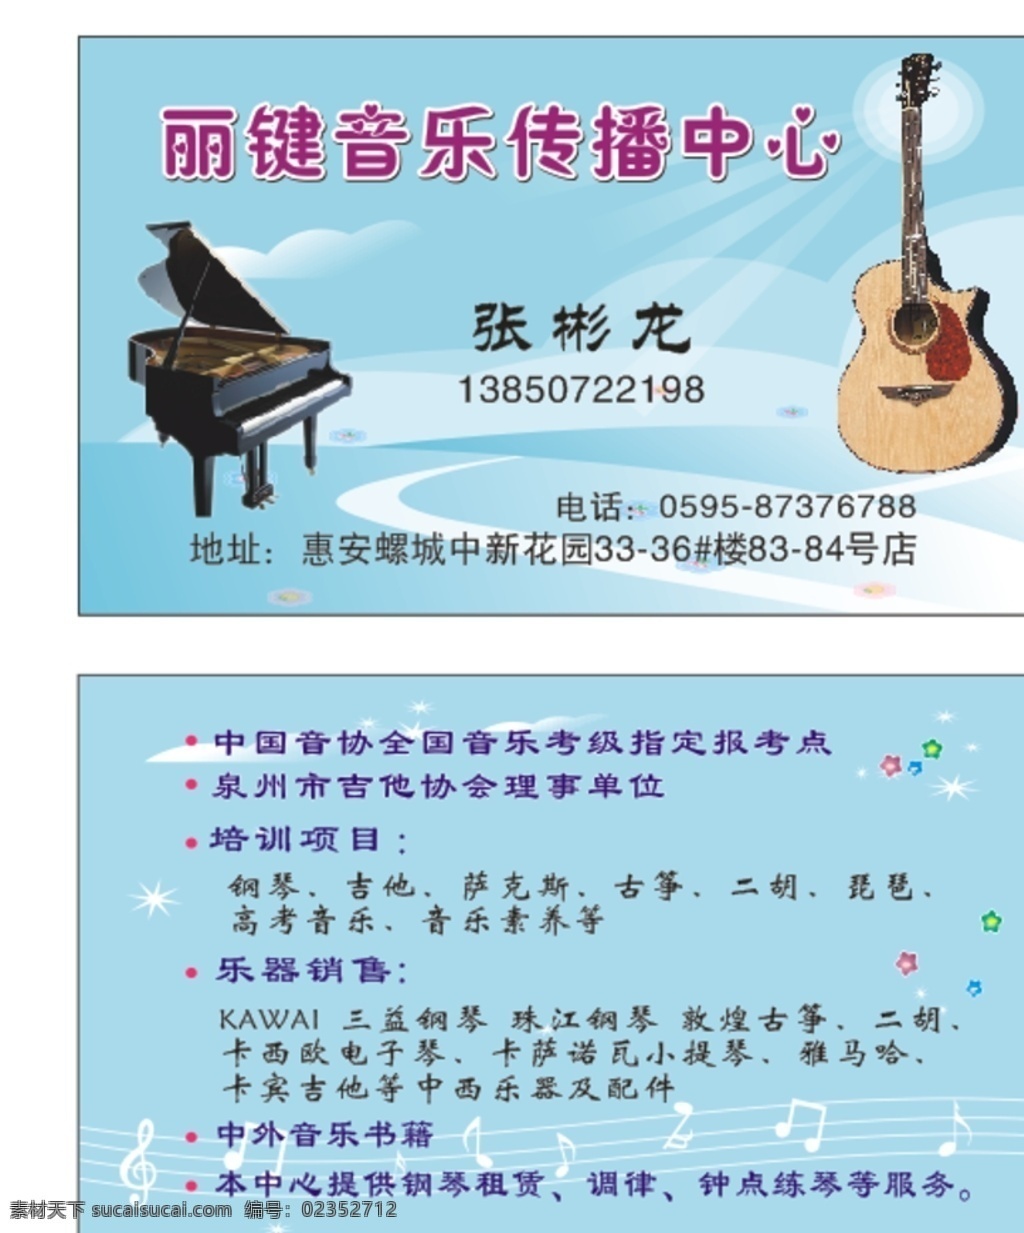 名片 音乐传播 音乐名片 音乐 钢琴 吉他 艺术名片 名片卡片